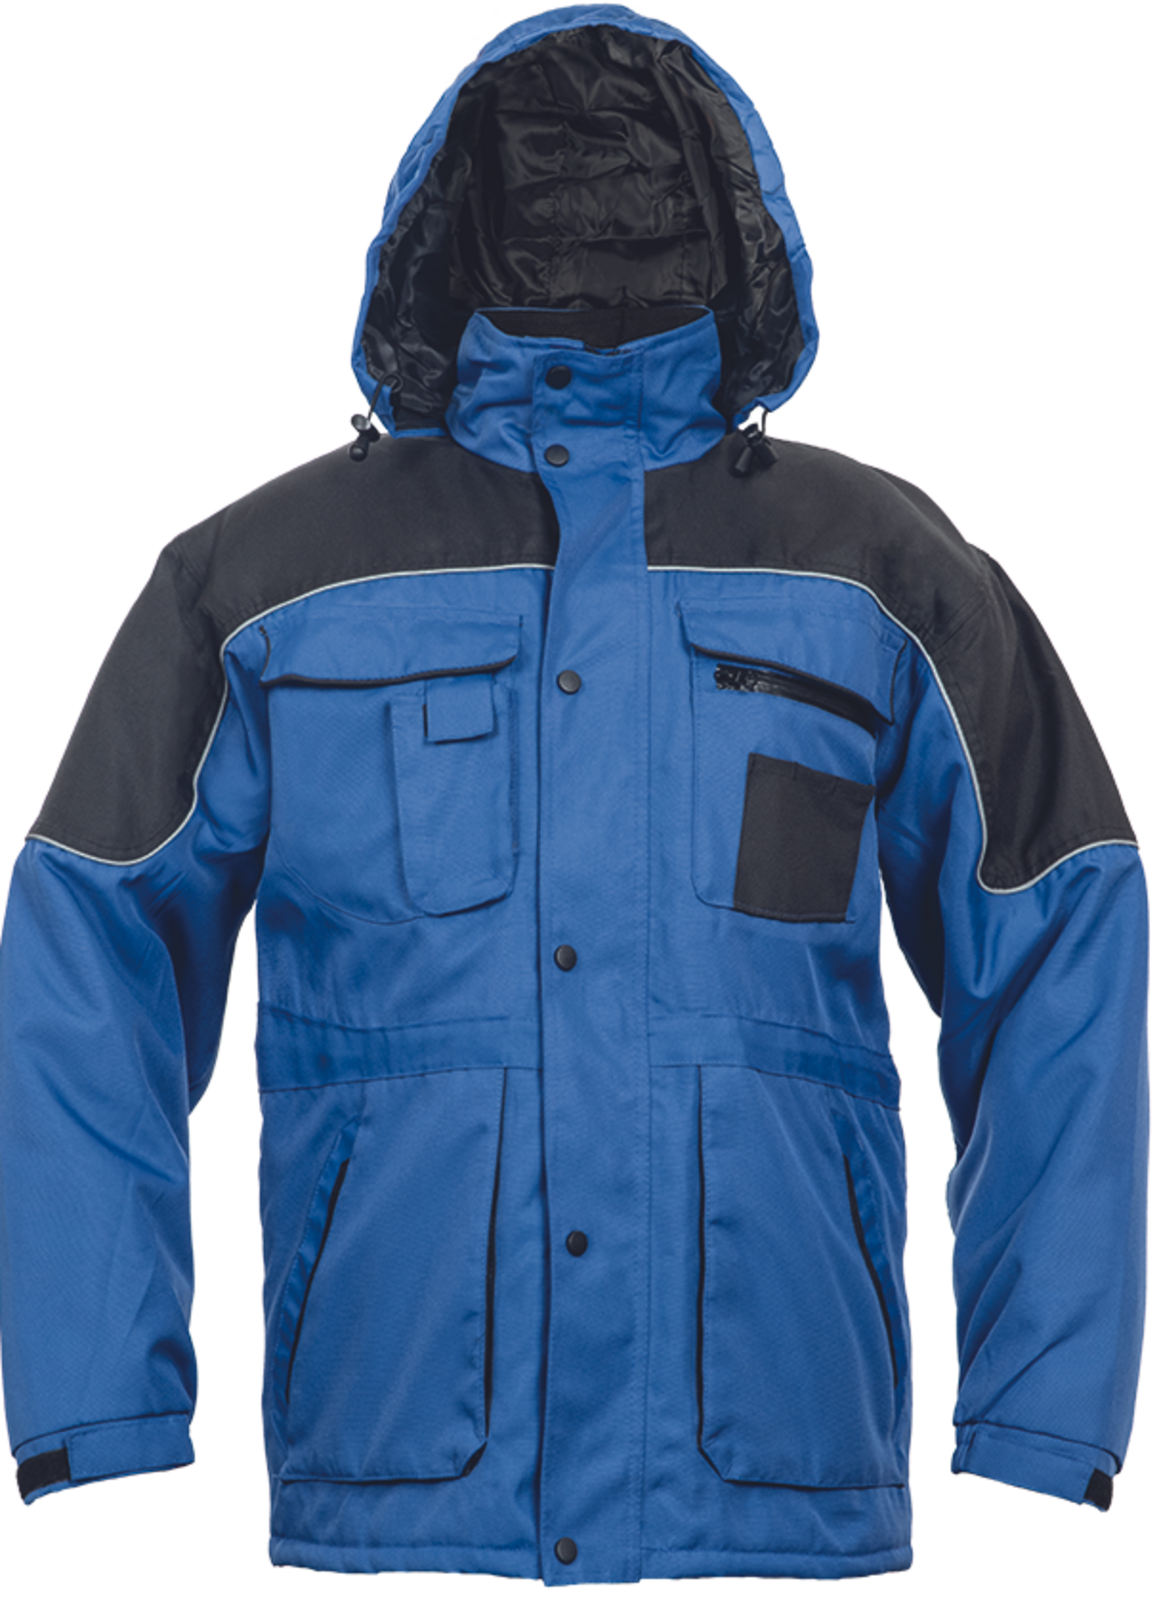 Pracovná bunda Ultimo pánska - veľkosť: XL, farba: modrá/čierna